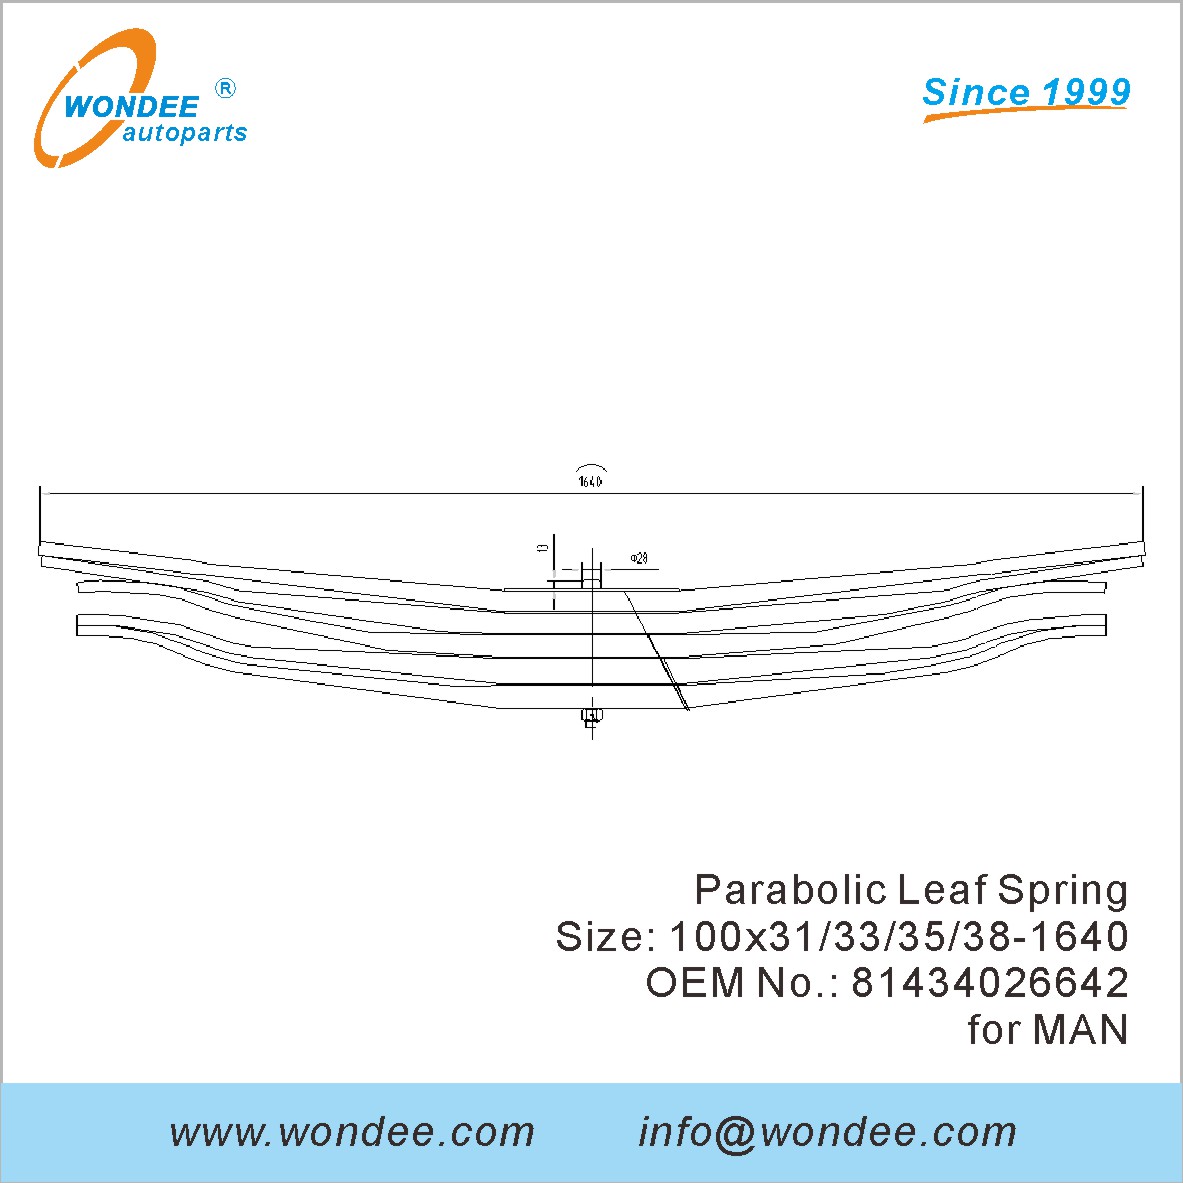 WONDEE heavy duty parabolic Leaf Spring OEM 81434026642 for MAN